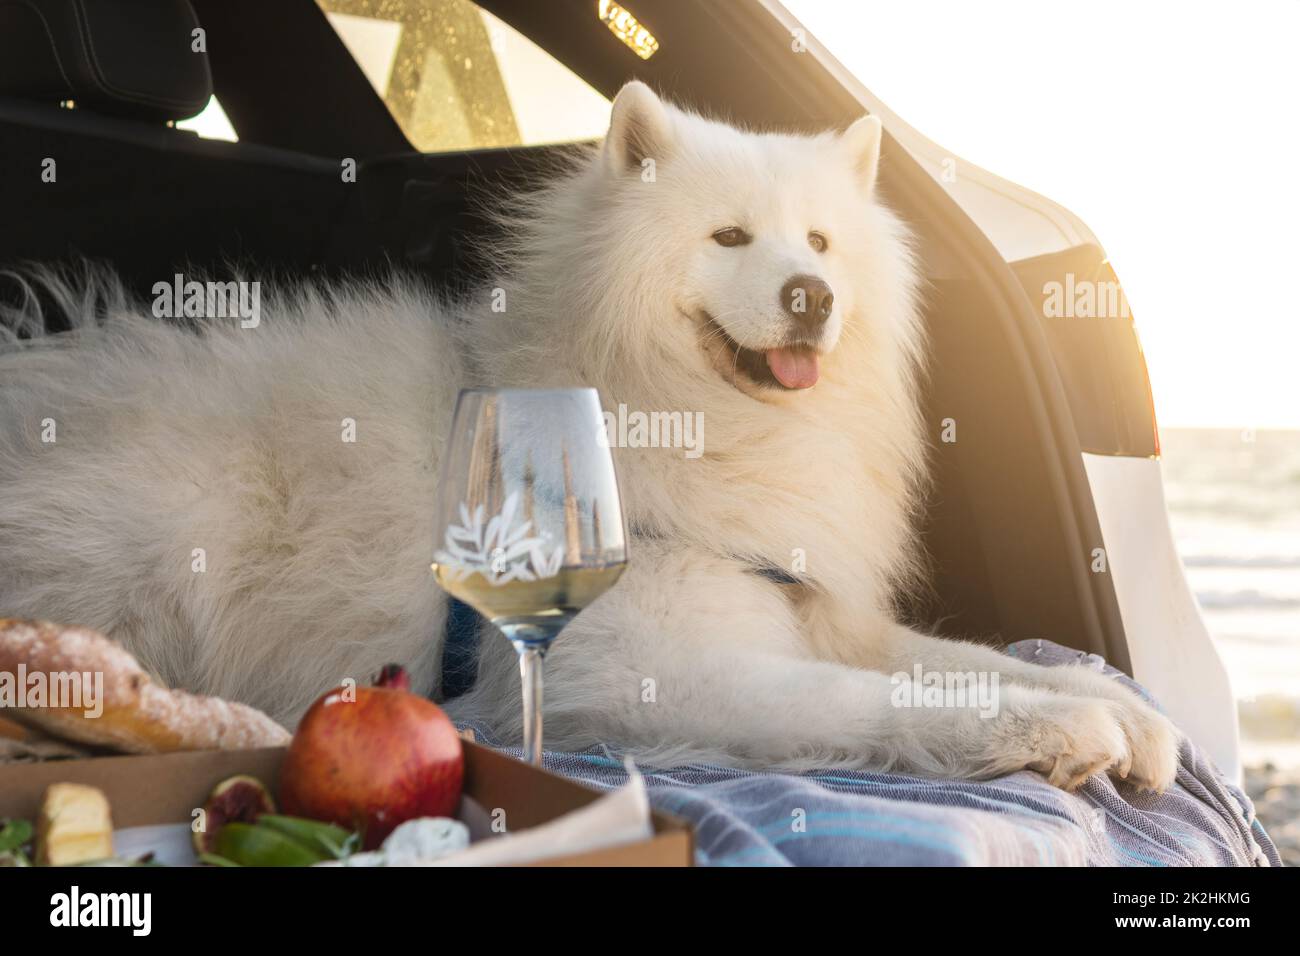 Kofferraum voll von Camping- und outdoor-Picknick-Sachen Stockfotografie -  Alamy